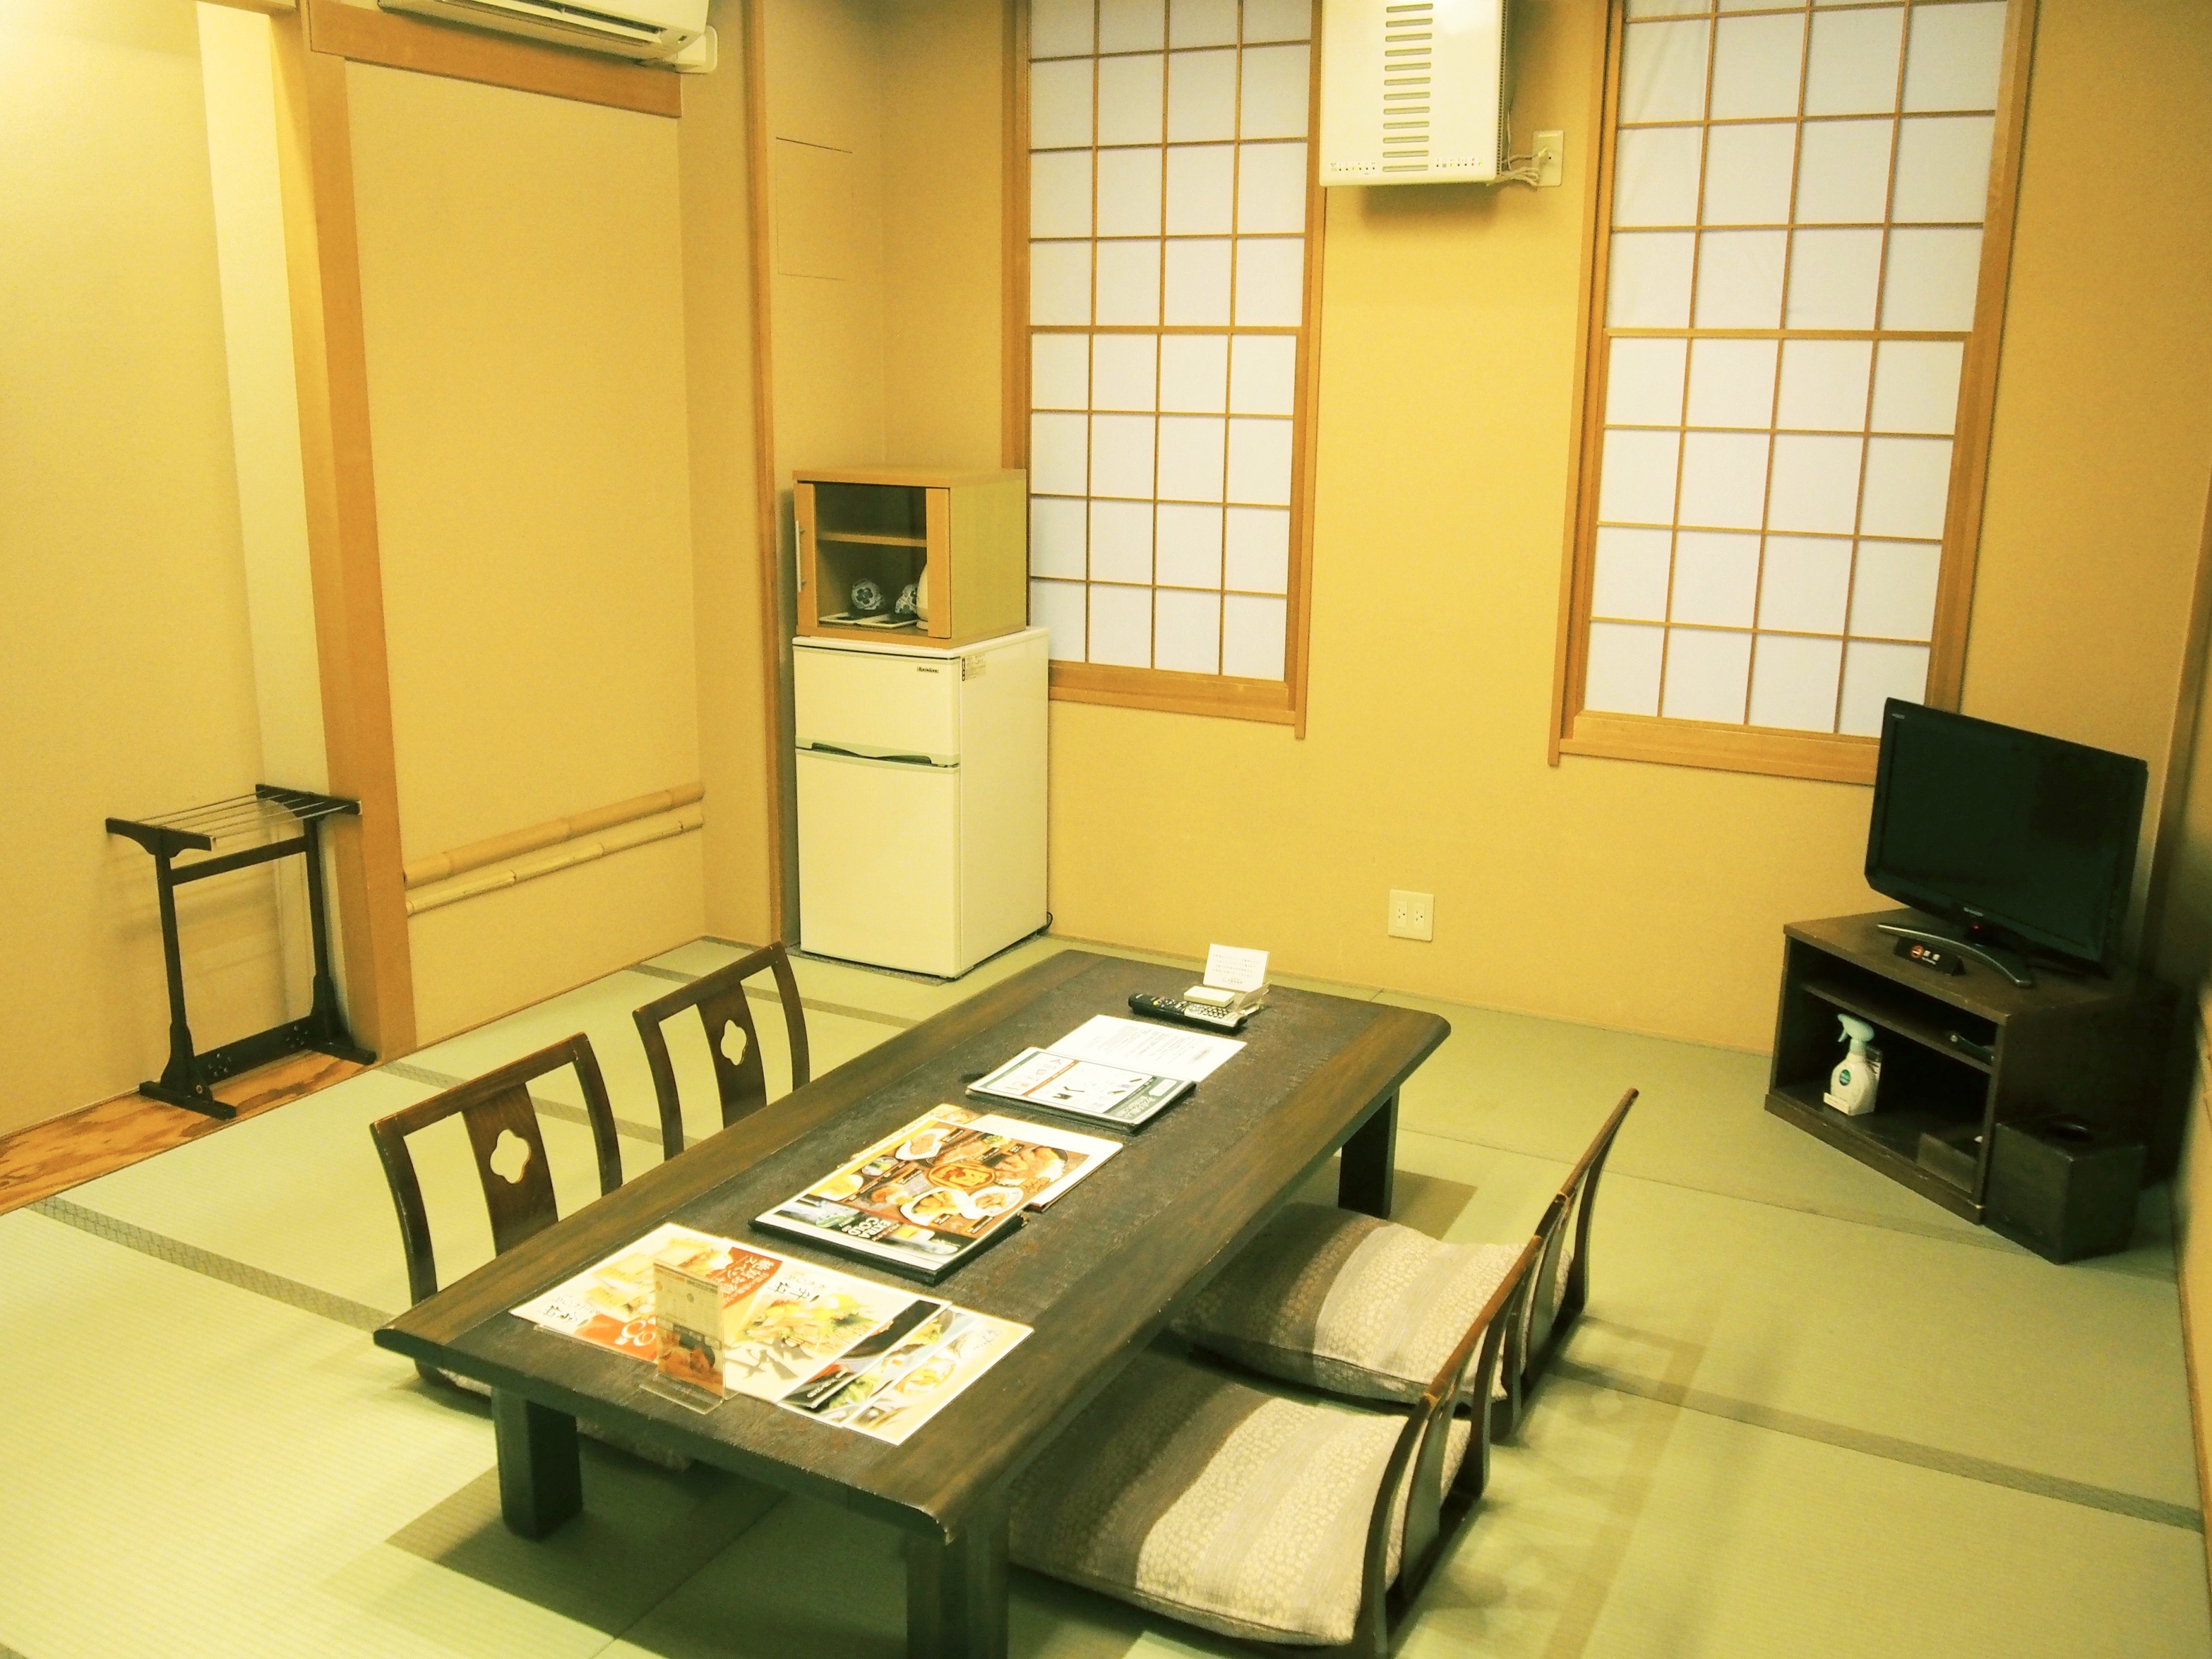 ห้องพักแขก 10 เสื่อ ห้องสไตล์ญี่ปุ่น / ไม่มีห้องน้ำ